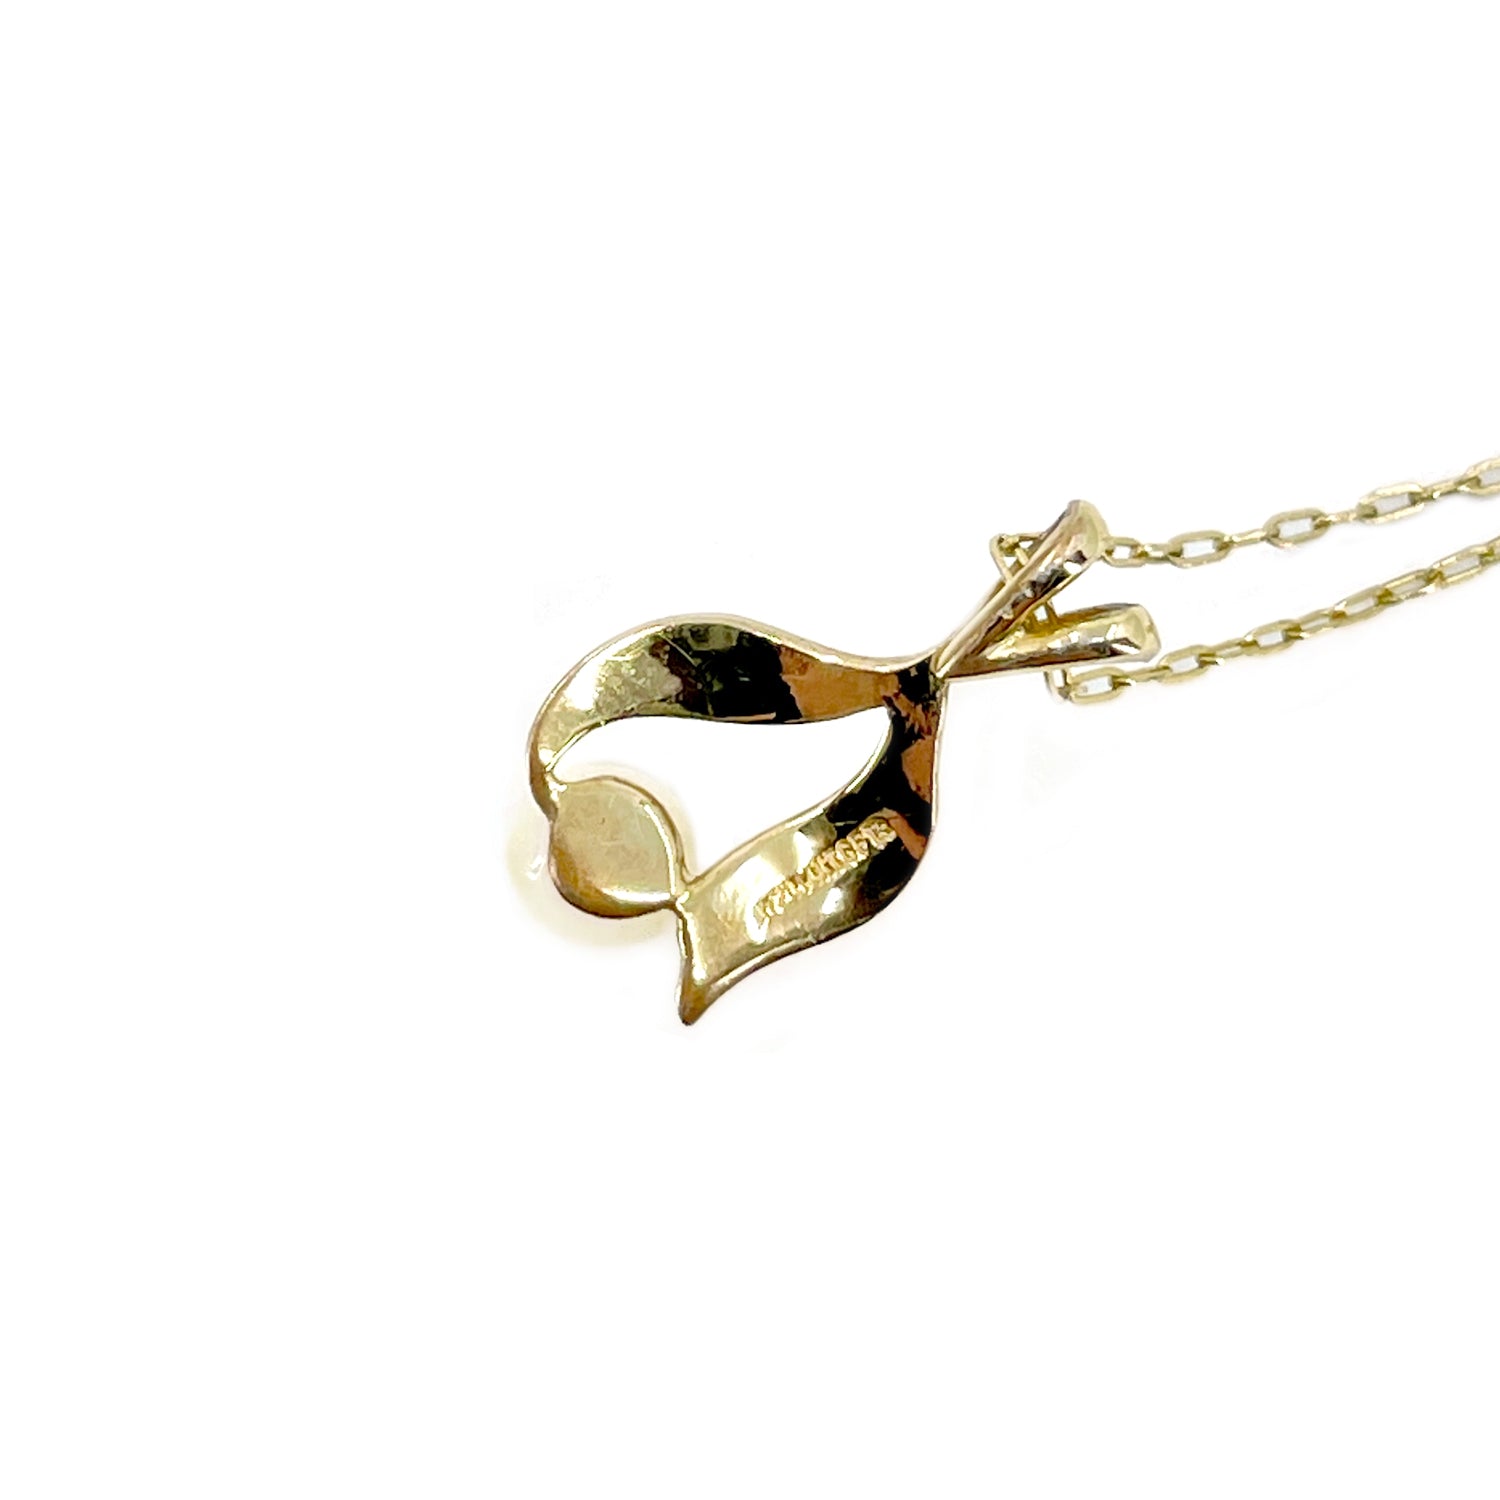 Leaf Vintage Modernist Japanese Saltwater Akoya Pearl Necklace- Gold Filled 17.75 Inch